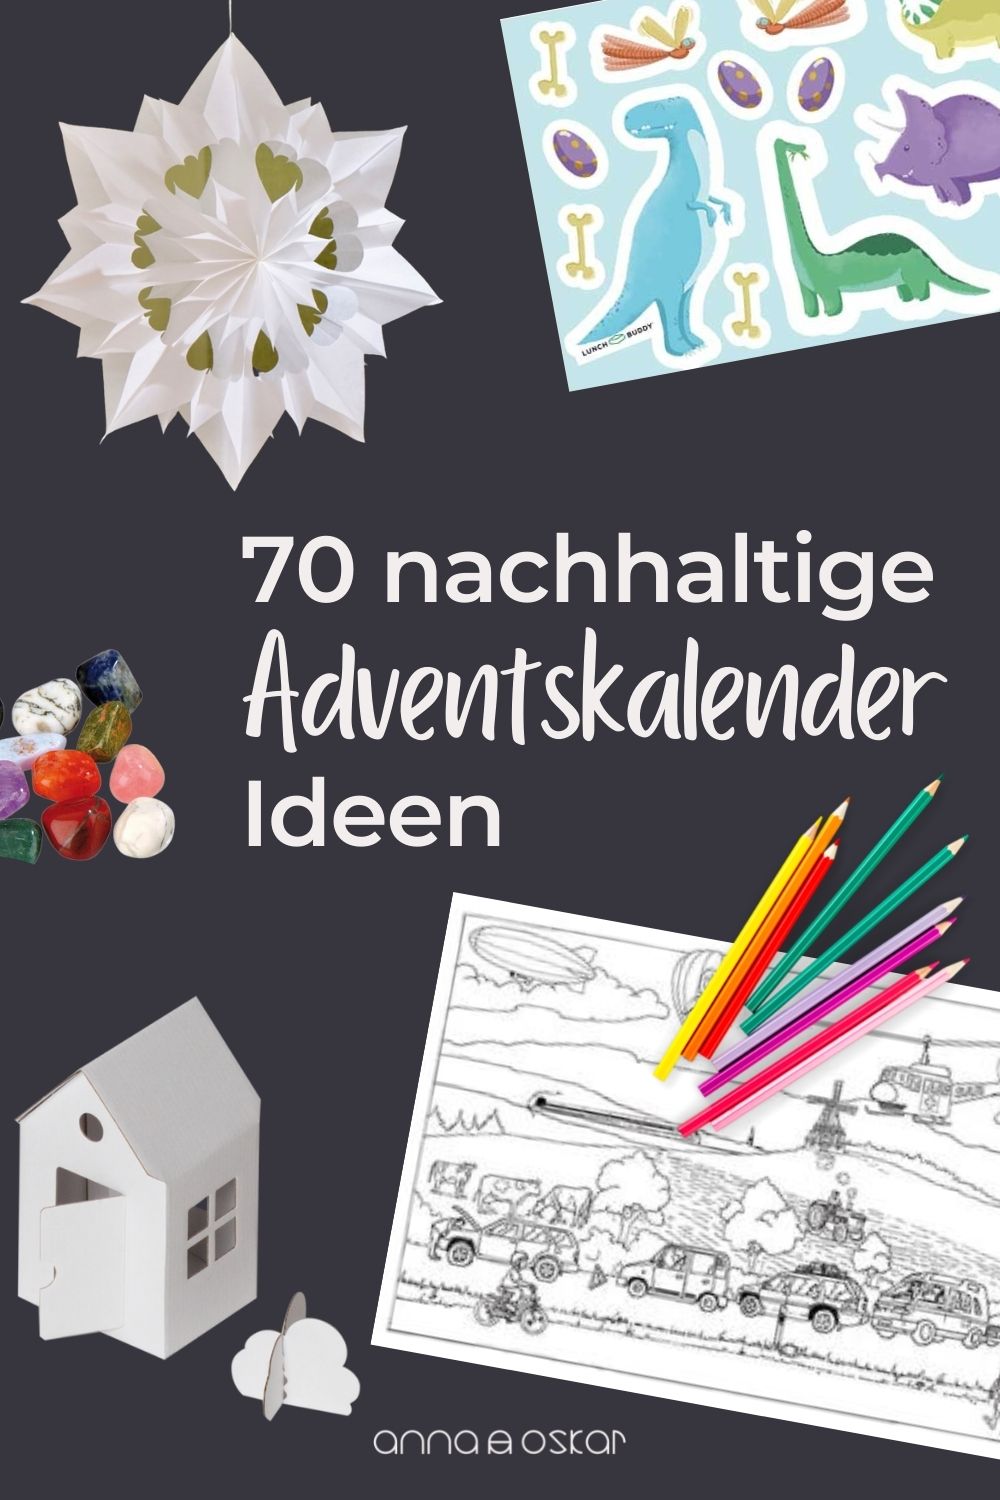 70 Ideen für einen nachhaltigen Adventskalender für die ganze Familie